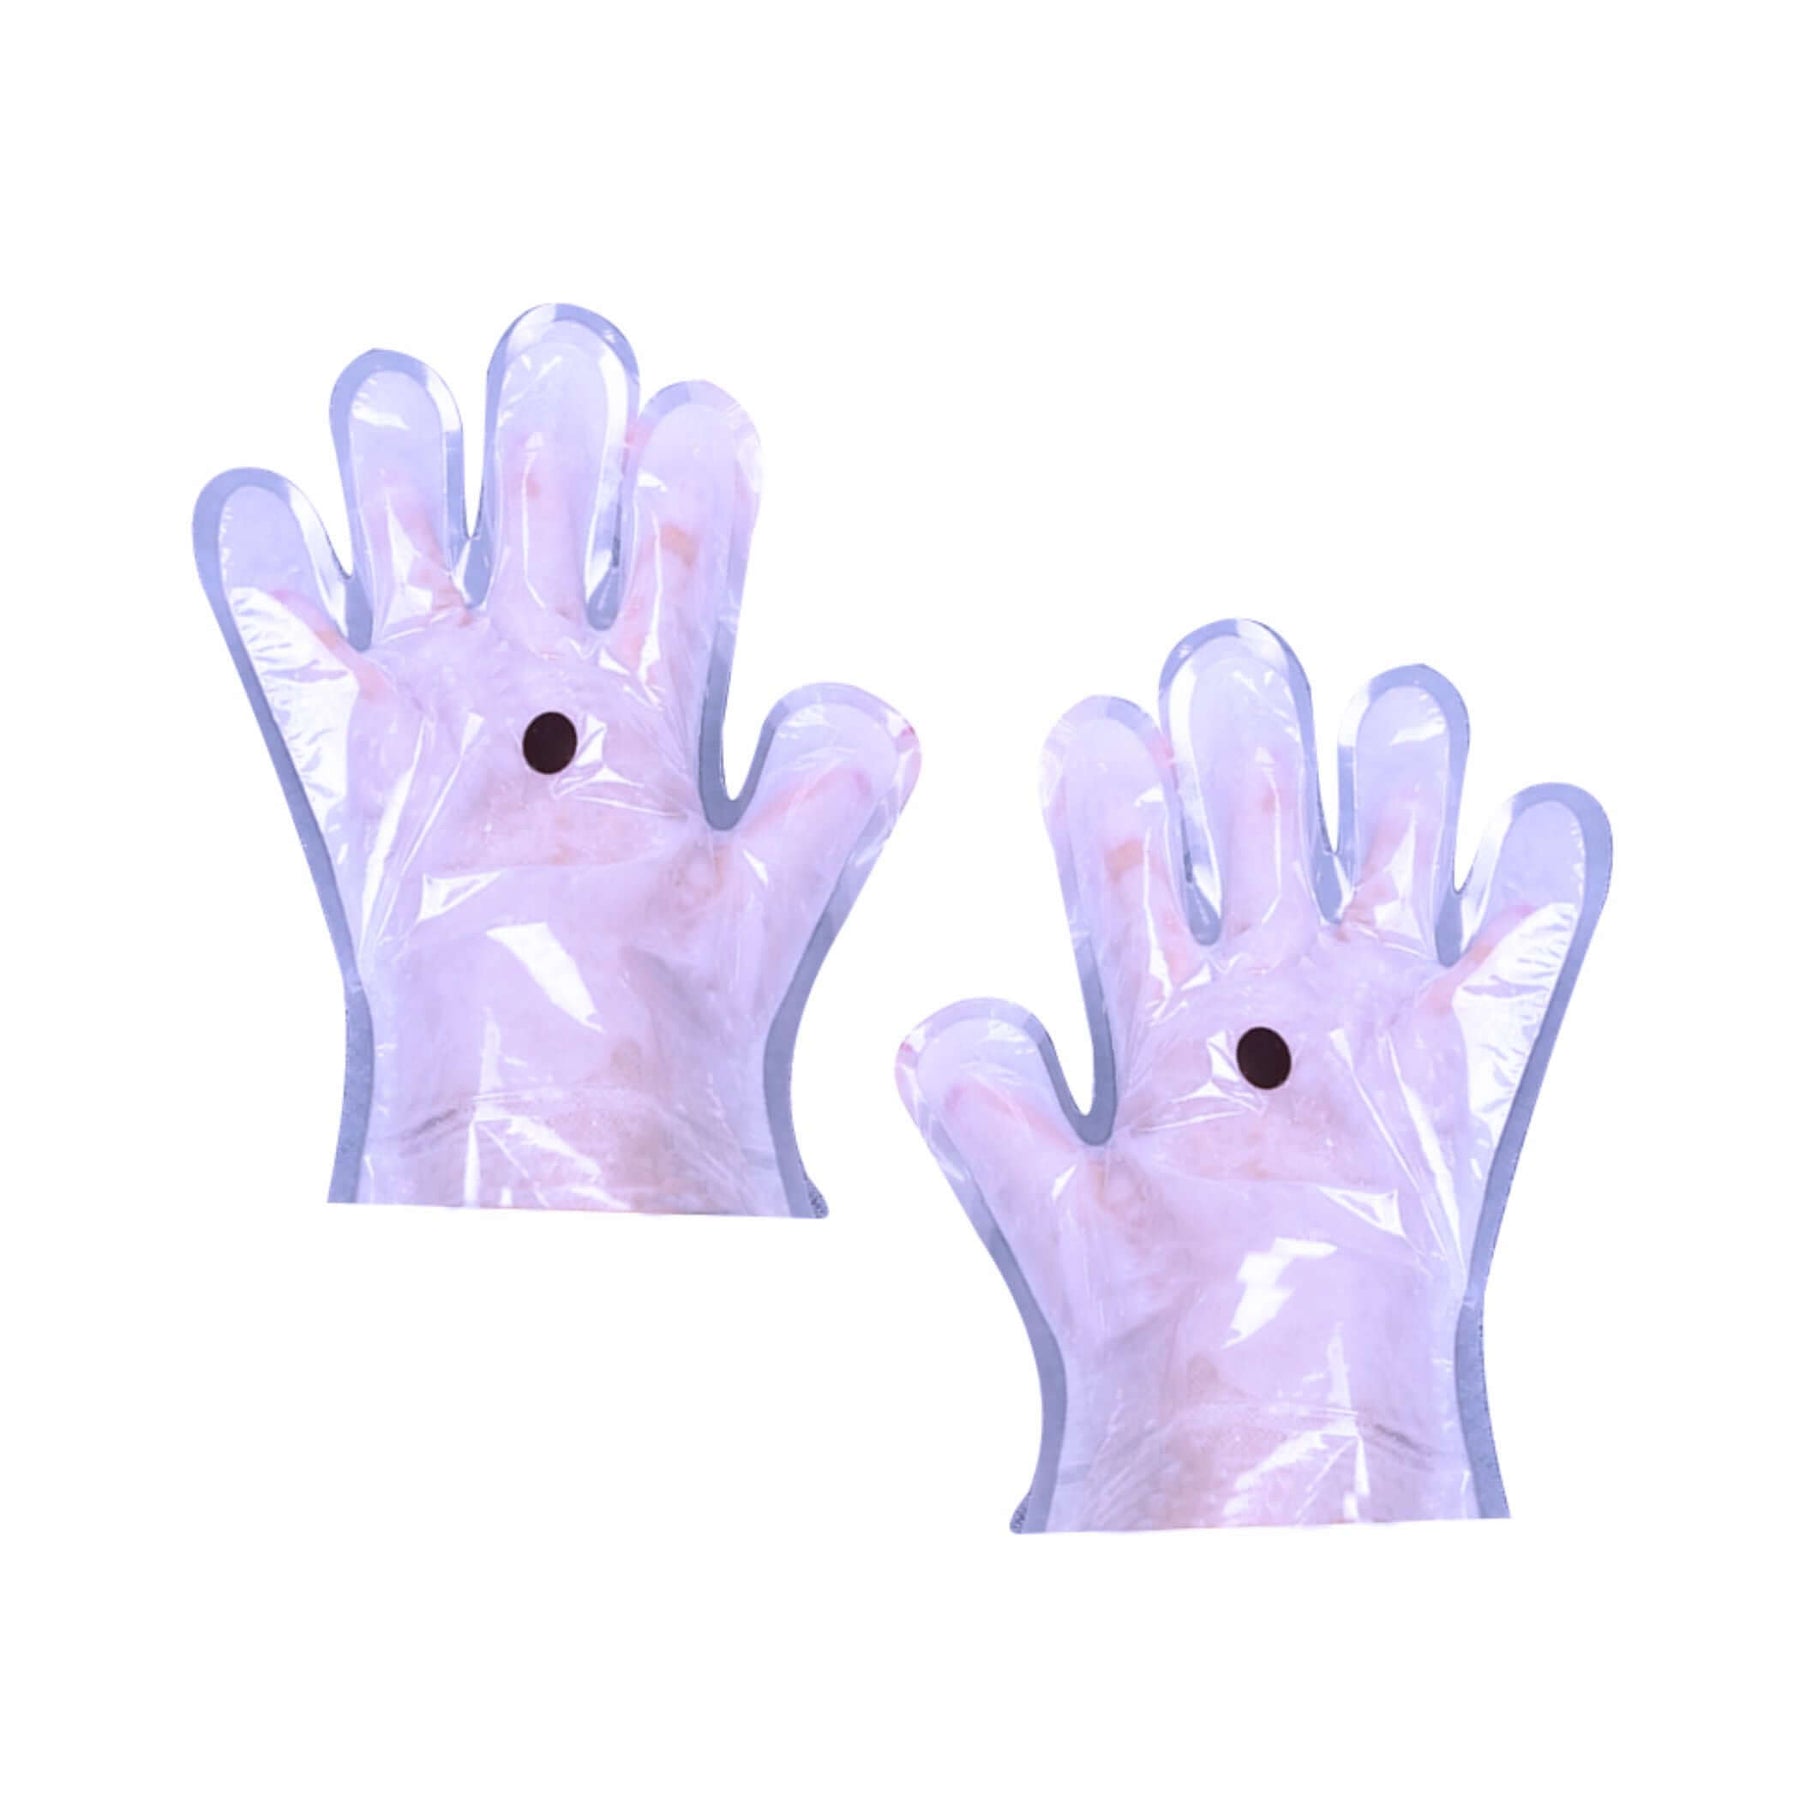 Spa concept - Lavender Paraffin Wax #paraffin #wax #hand